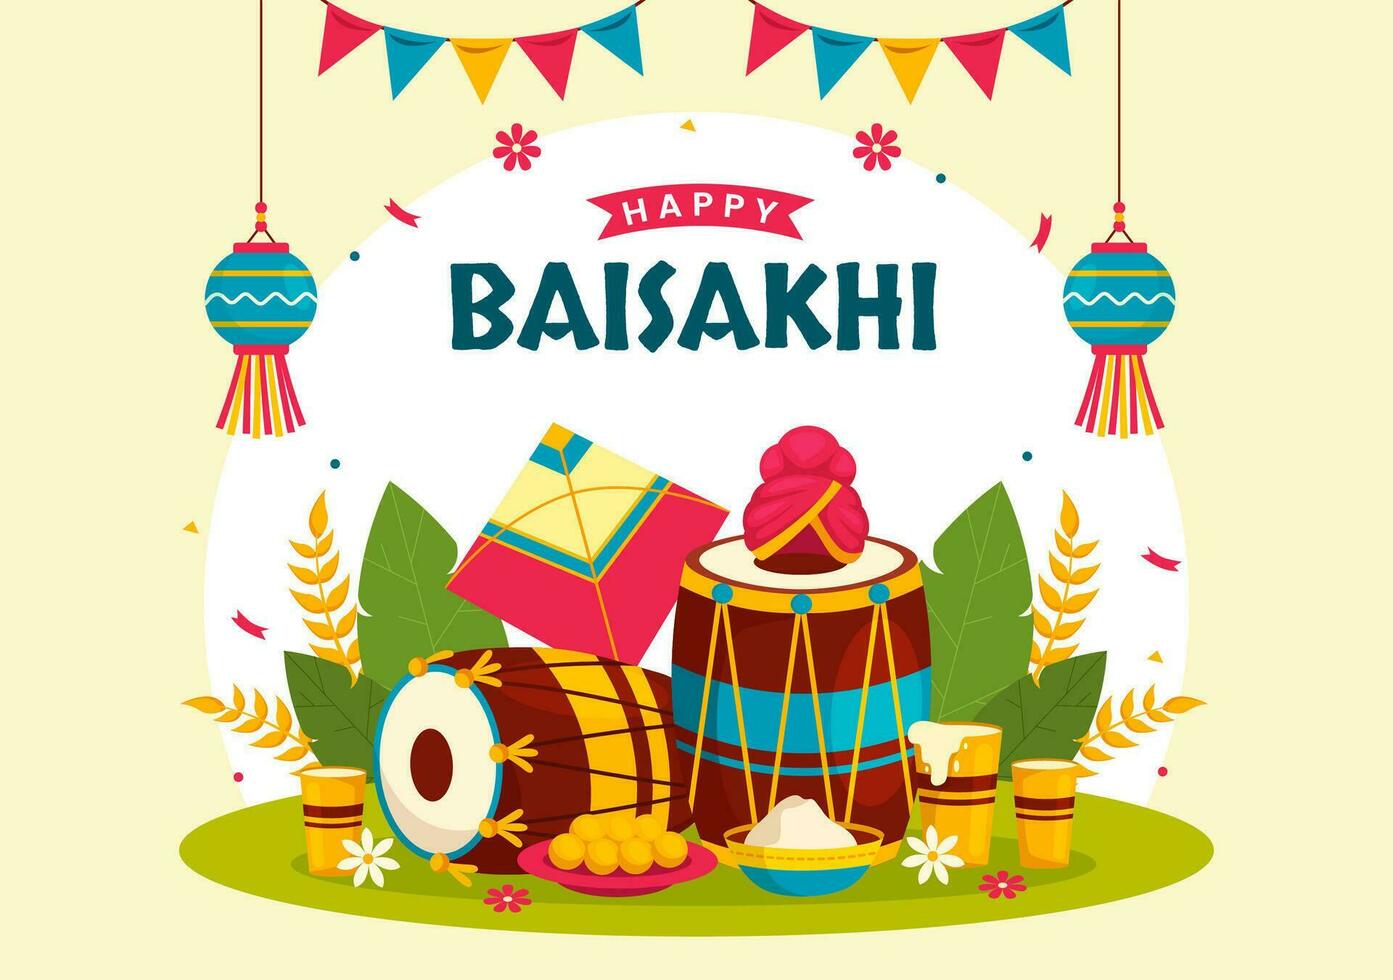 contento baisakhi vector ilustración de vaisakhi punjabi primavera cosecha festival de sij celebracion con tambor y cometa en fiesta dibujos animados antecedentes